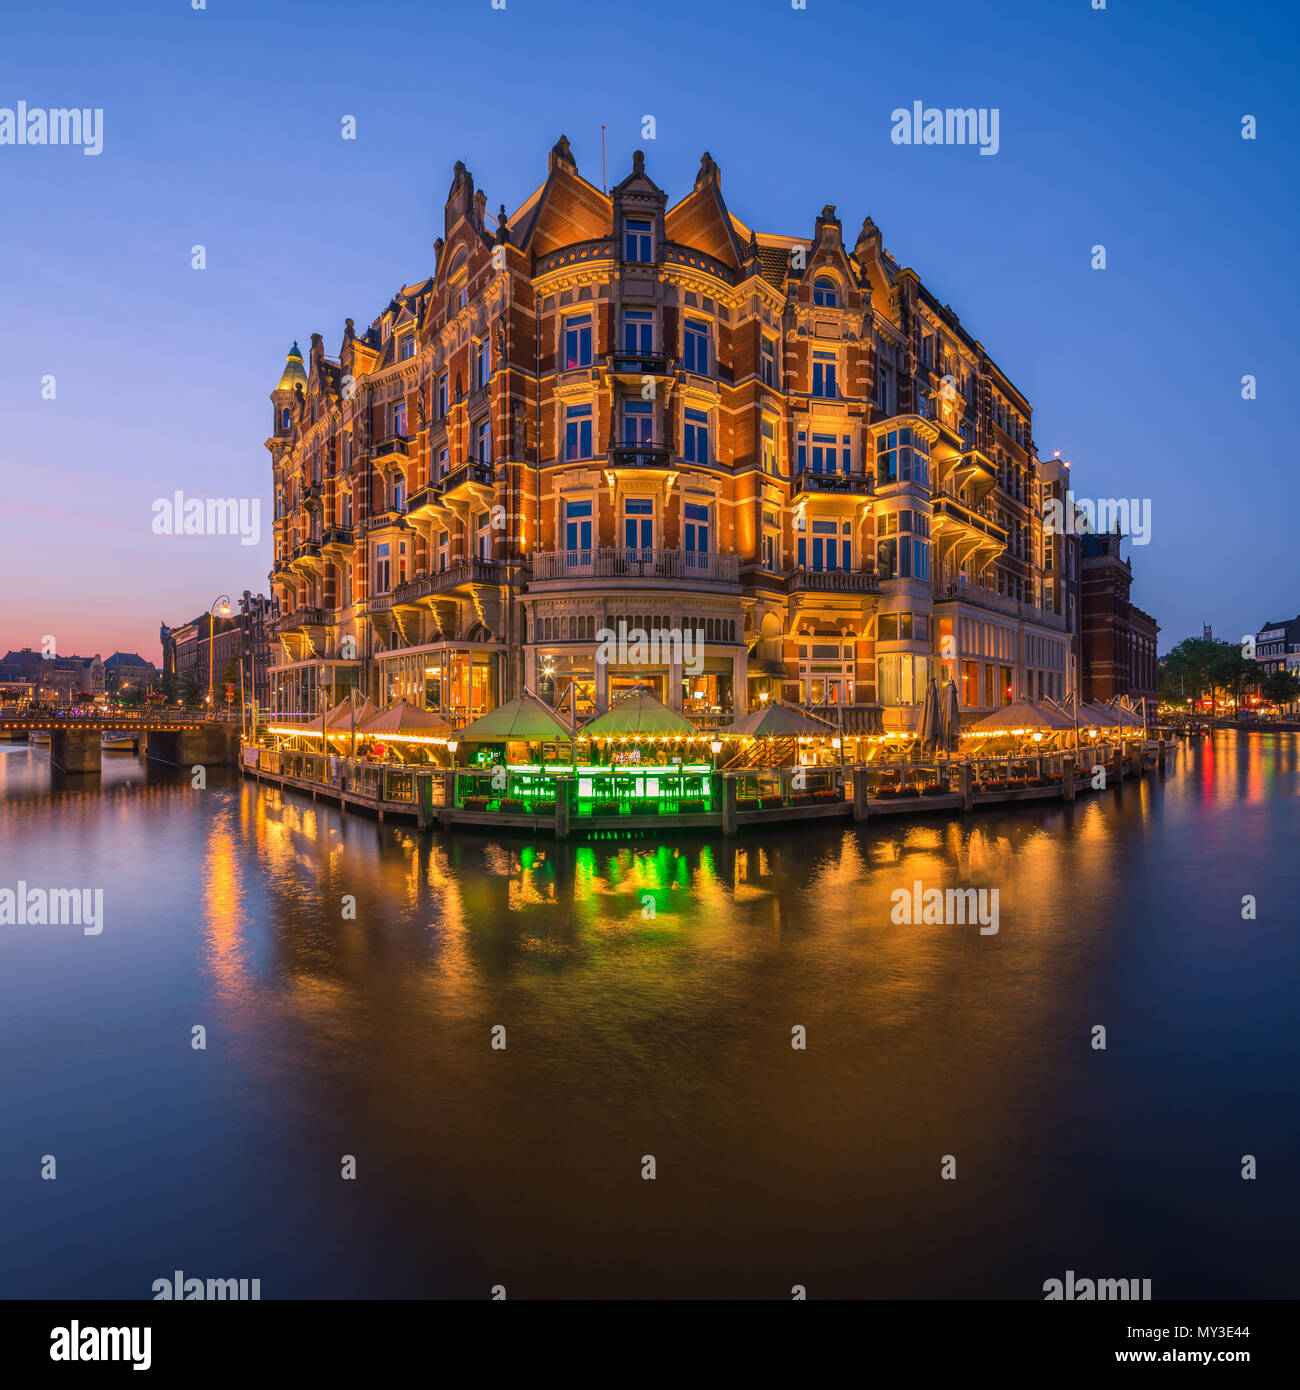 De L'Europe Amsterdam (früher bekannt als Hotel de l'Europe) ist ein 5-Sterne Hotel auf den Fluss Amstel im Zentrum von Amsterdam, die Netherlan Stockfoto